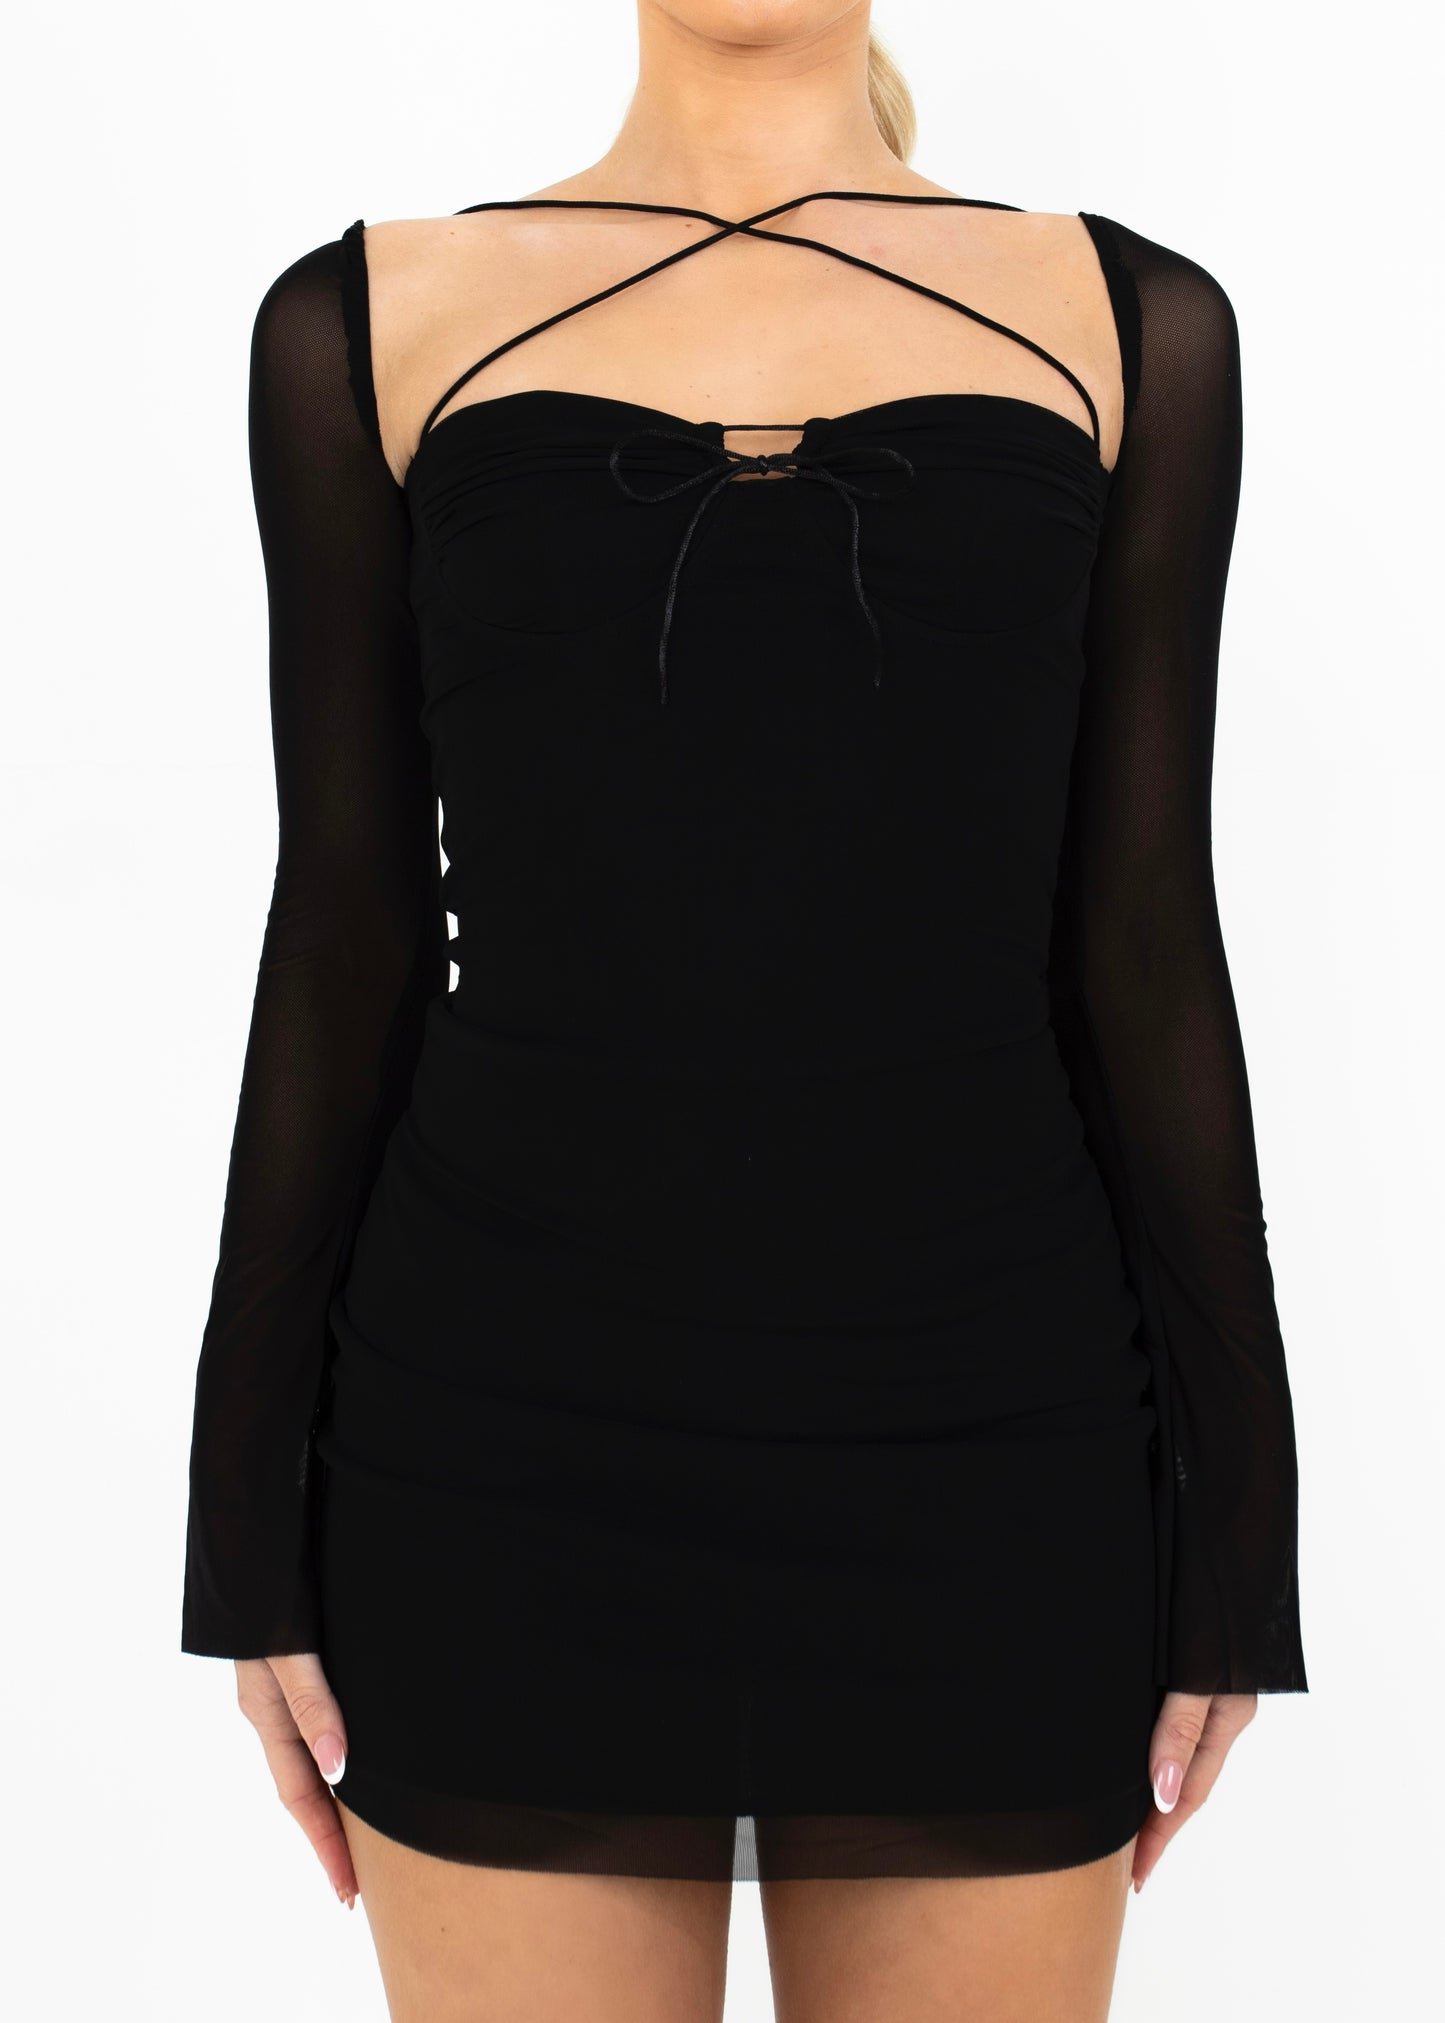 CATERINA - Black Bodycon Mini Dress